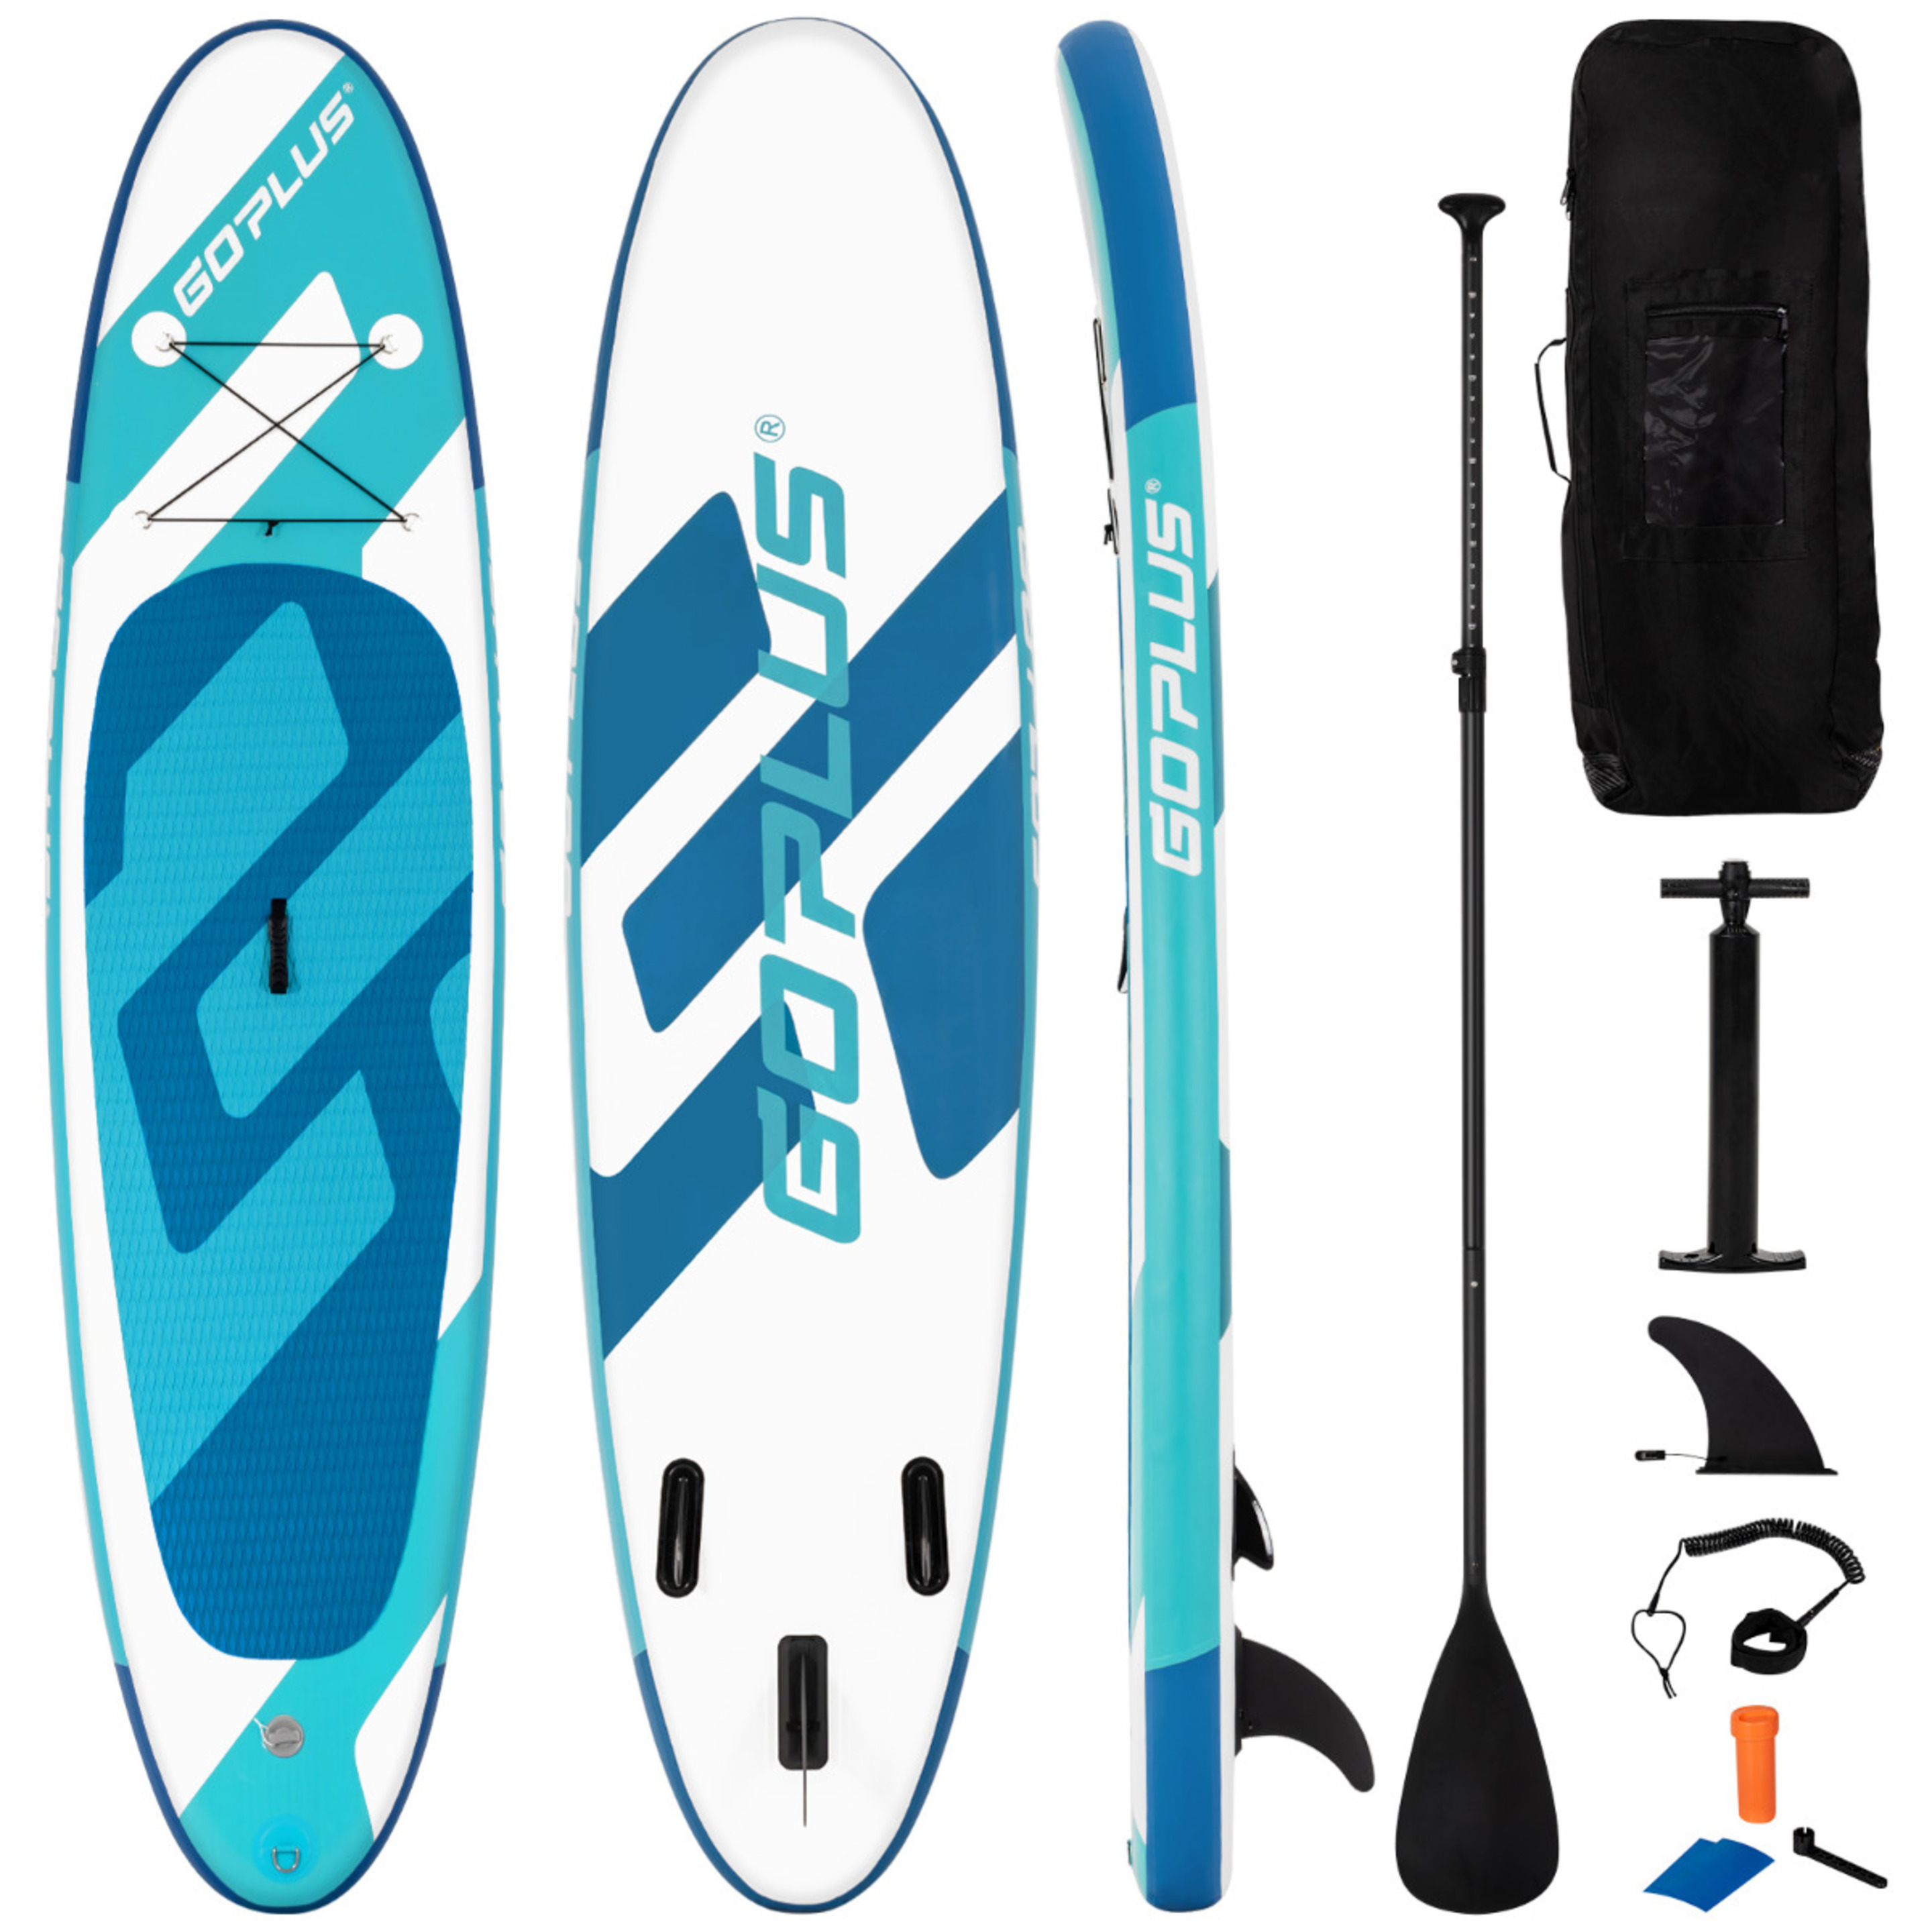 Costway Tabla De Paddle Inflable 335 Cm Flotante Antideslizante - Azul/Blanco - Tabla De Surf  MKP